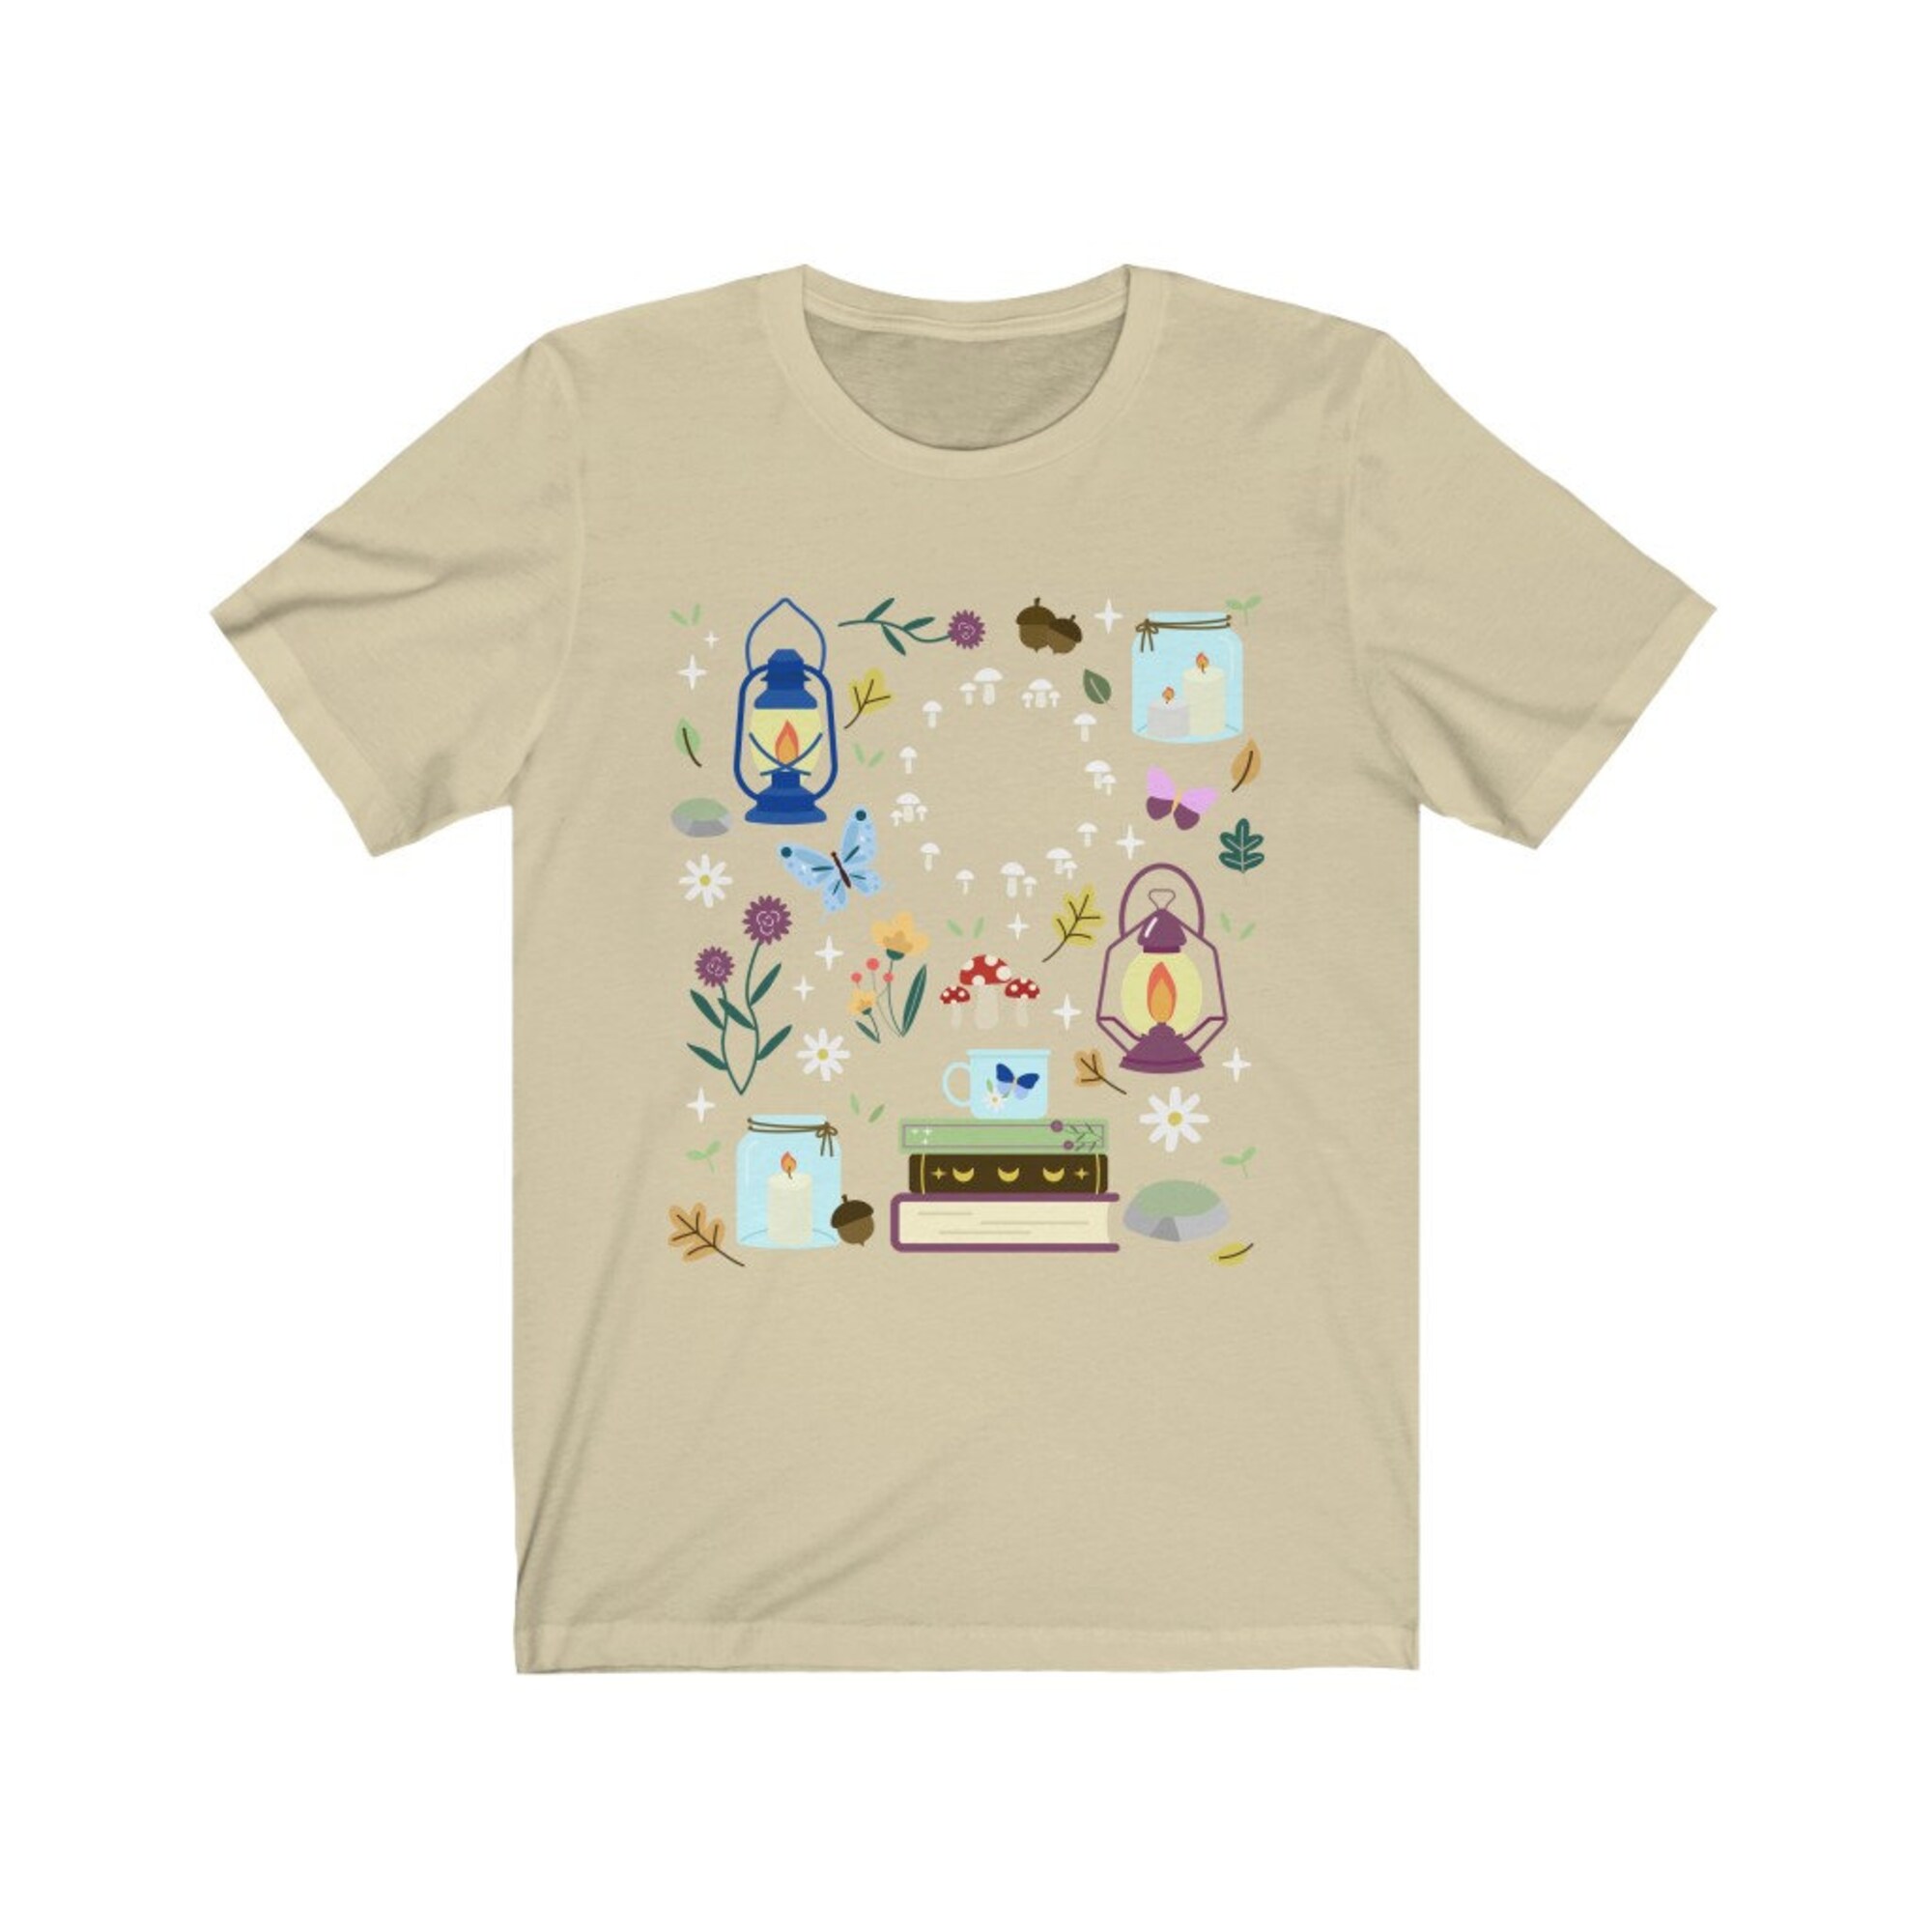 Cottage Lantern Shirt, Cottagecore Tshirt, Dark Academia Shirt, Cottage Core Shirt